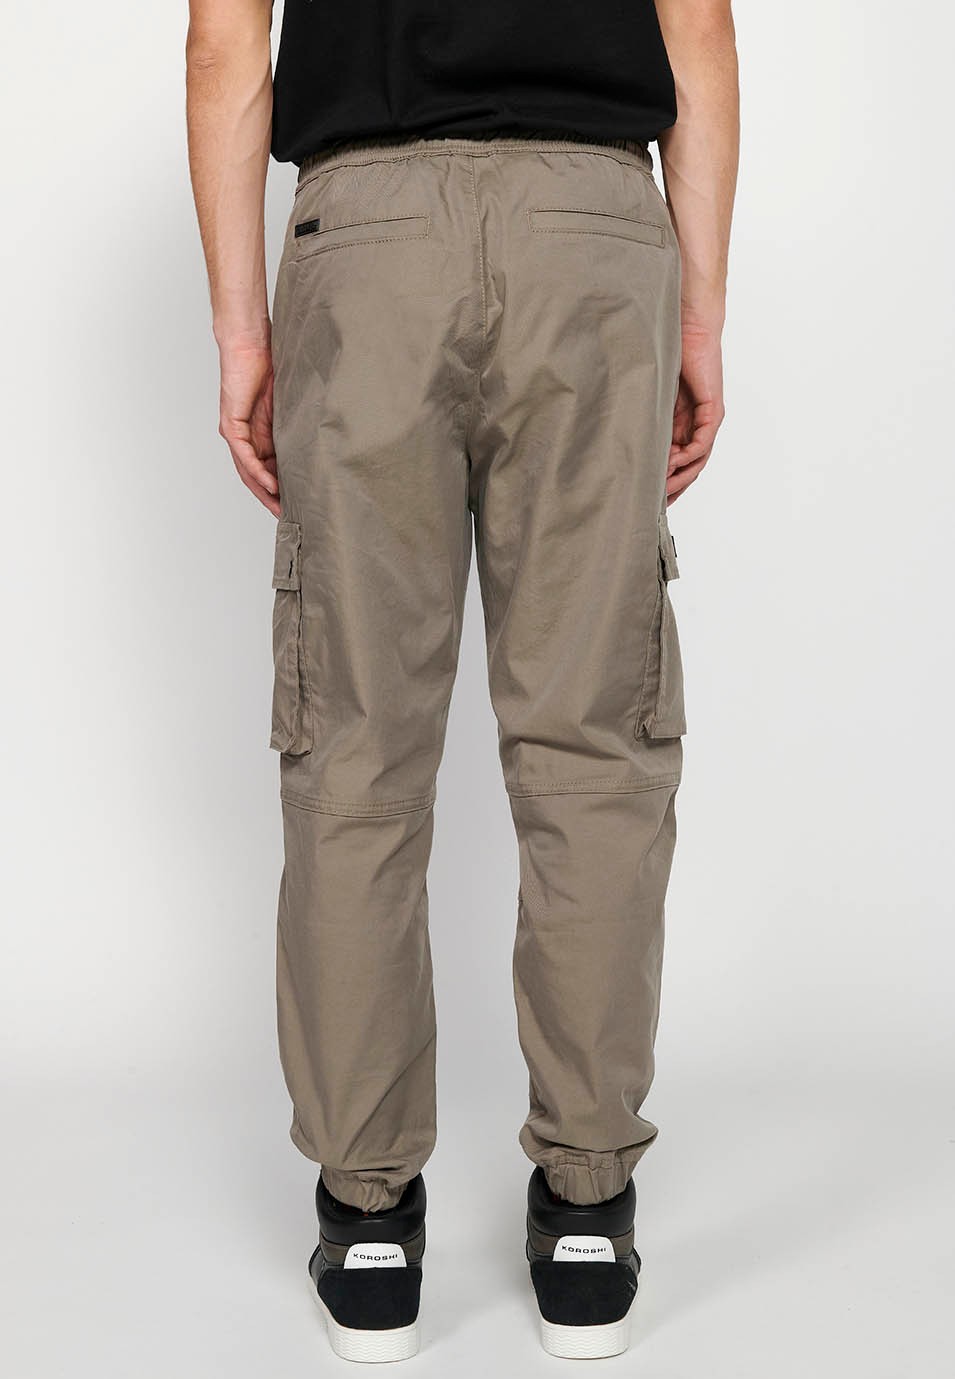 Pantalon de jogging cargo beige avec taille caoutchoutée avec cordon de serrage et poches, deux côtés avec rabat pour homme